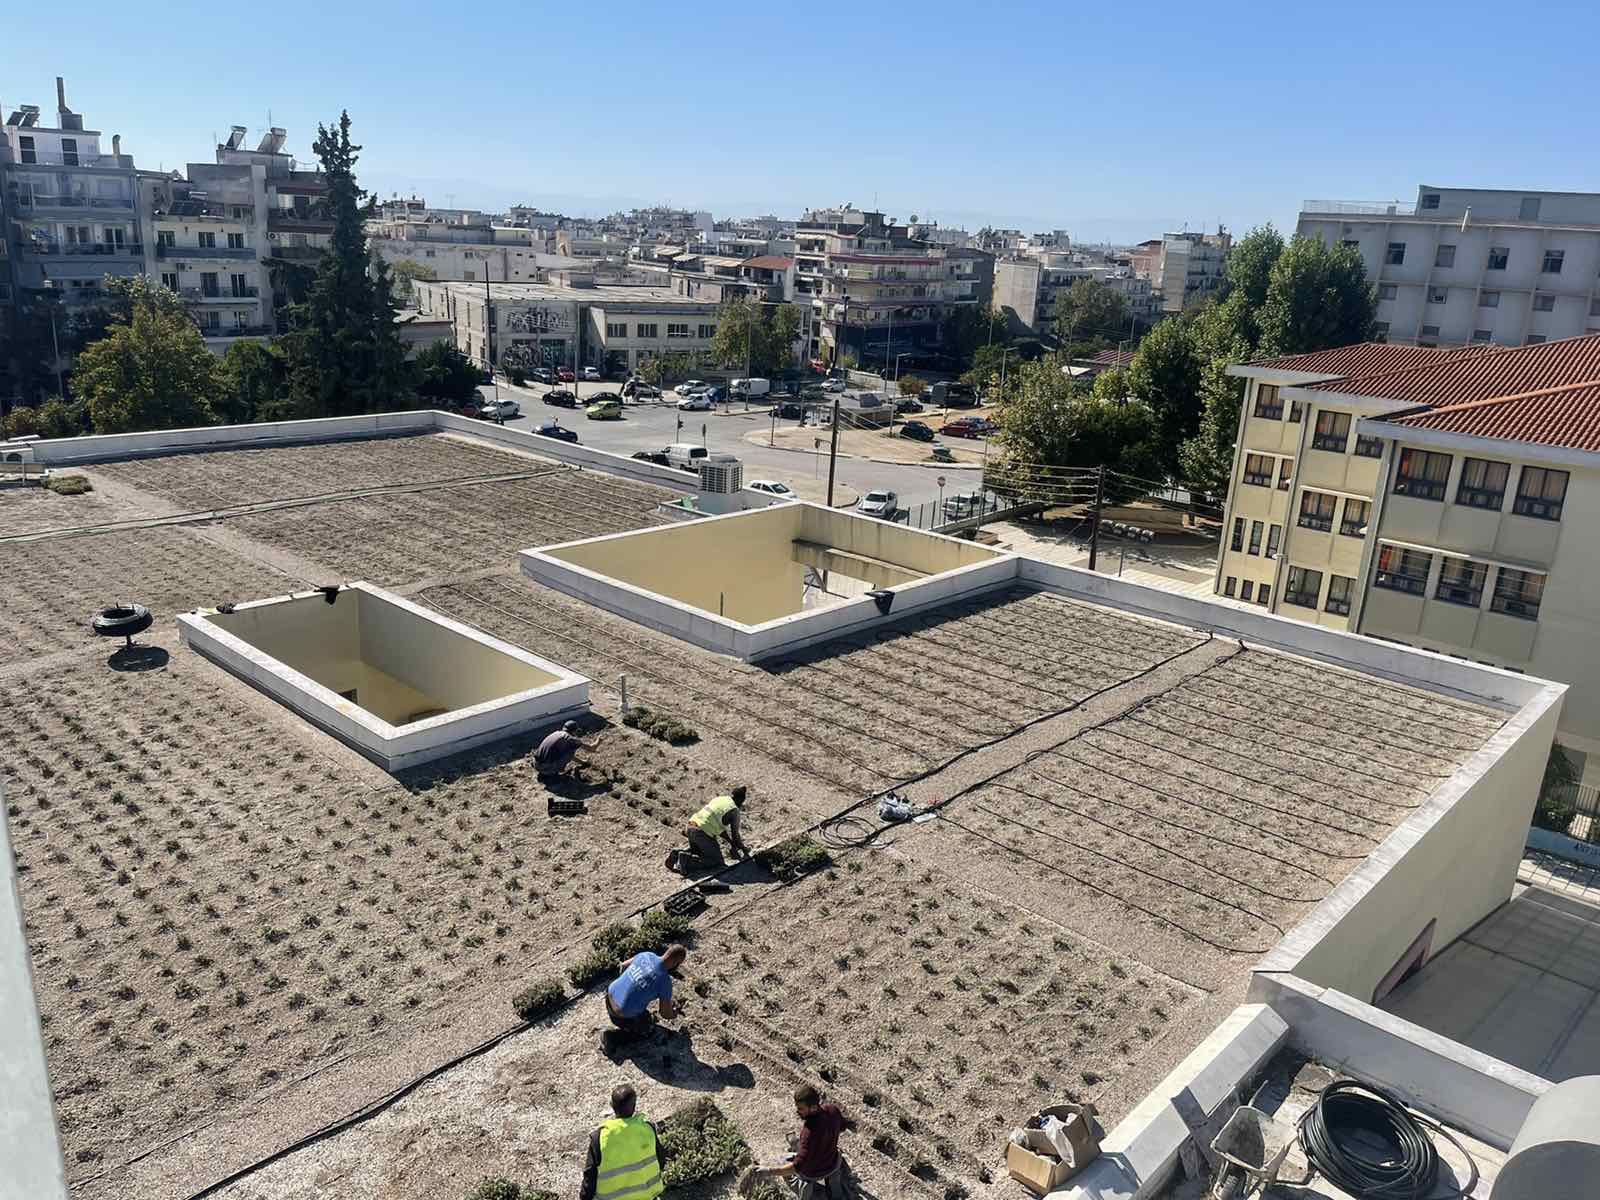 ΕΠΑΛ Σταυρούπολης: Εικόνες από το έργο που αλλάζει μορφή στο σχολείο – Εντυπωσιάζει ο κάθετος κήπος